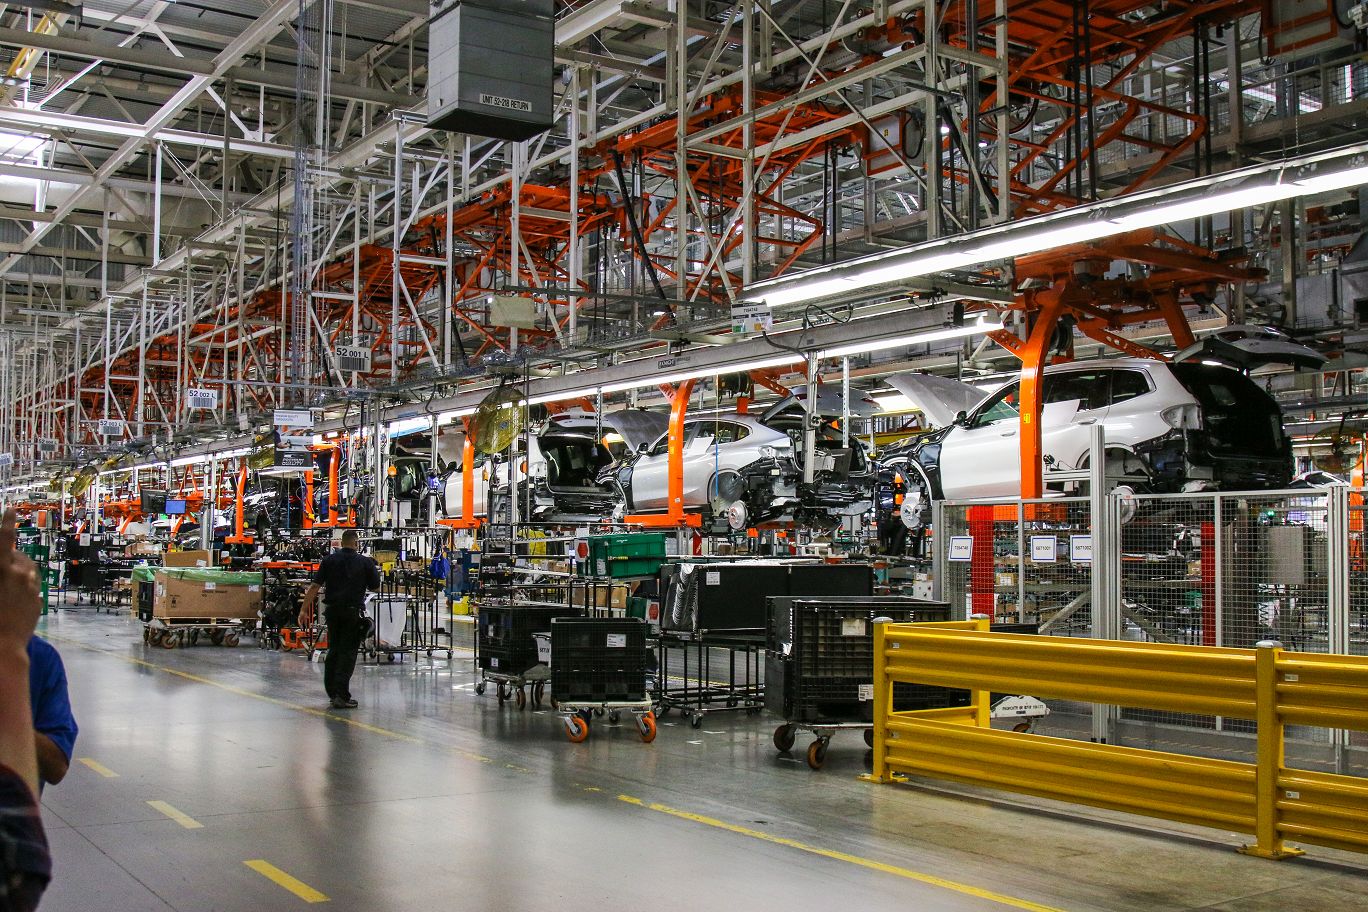 spartanburg厂区自动化程度极高,每日平均产量可达1400辆